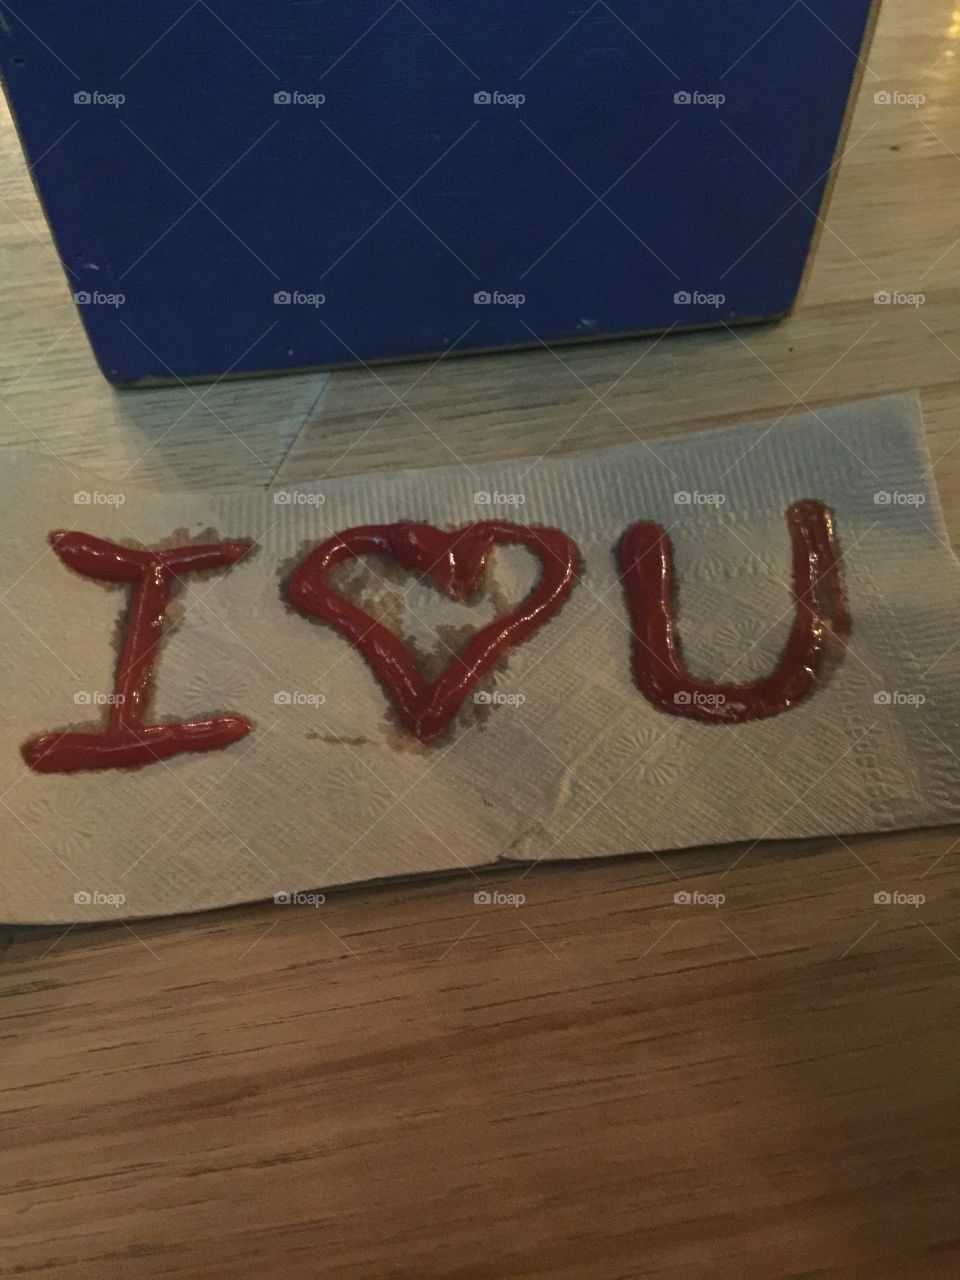 Ketchup art